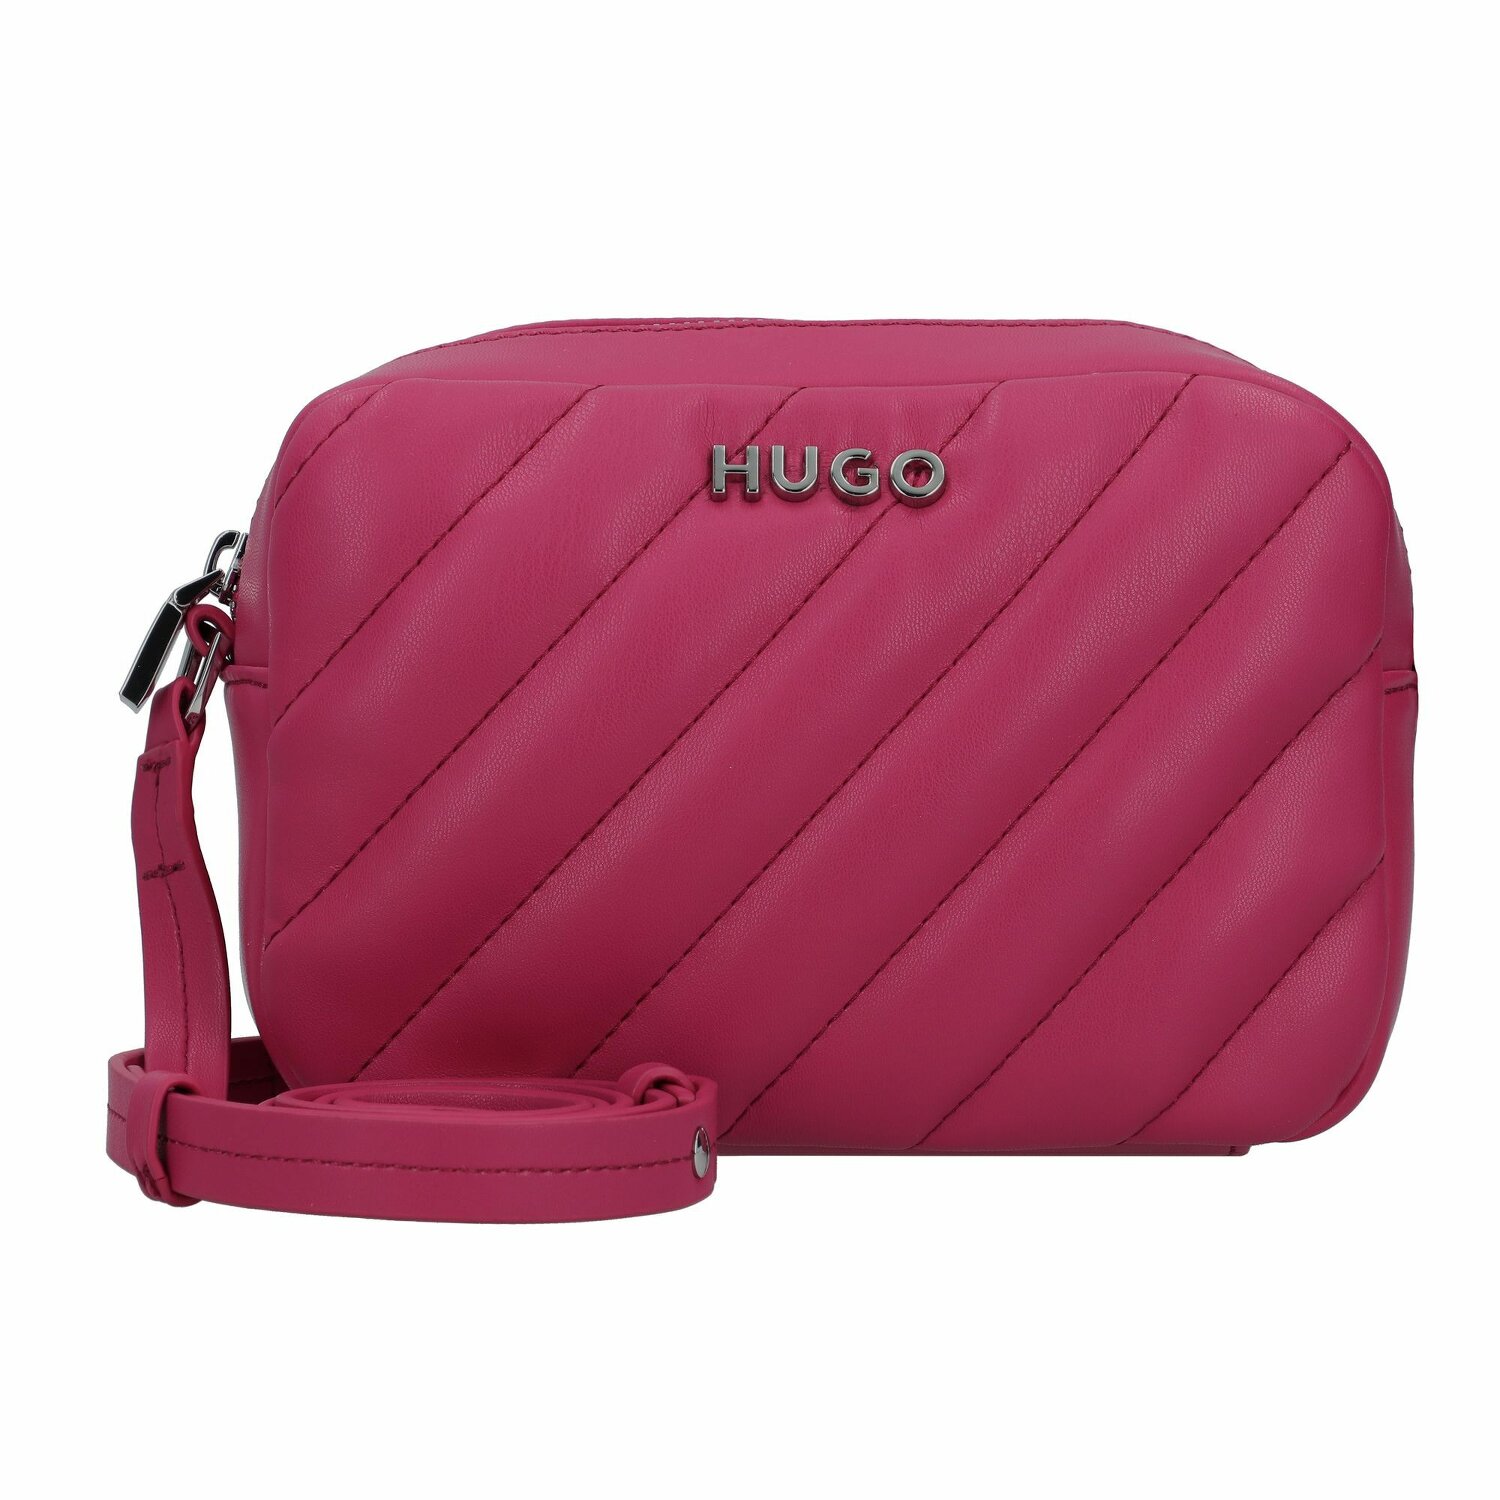 Hugo Lizzie Umhängetasche 19 cm medium pink | bei